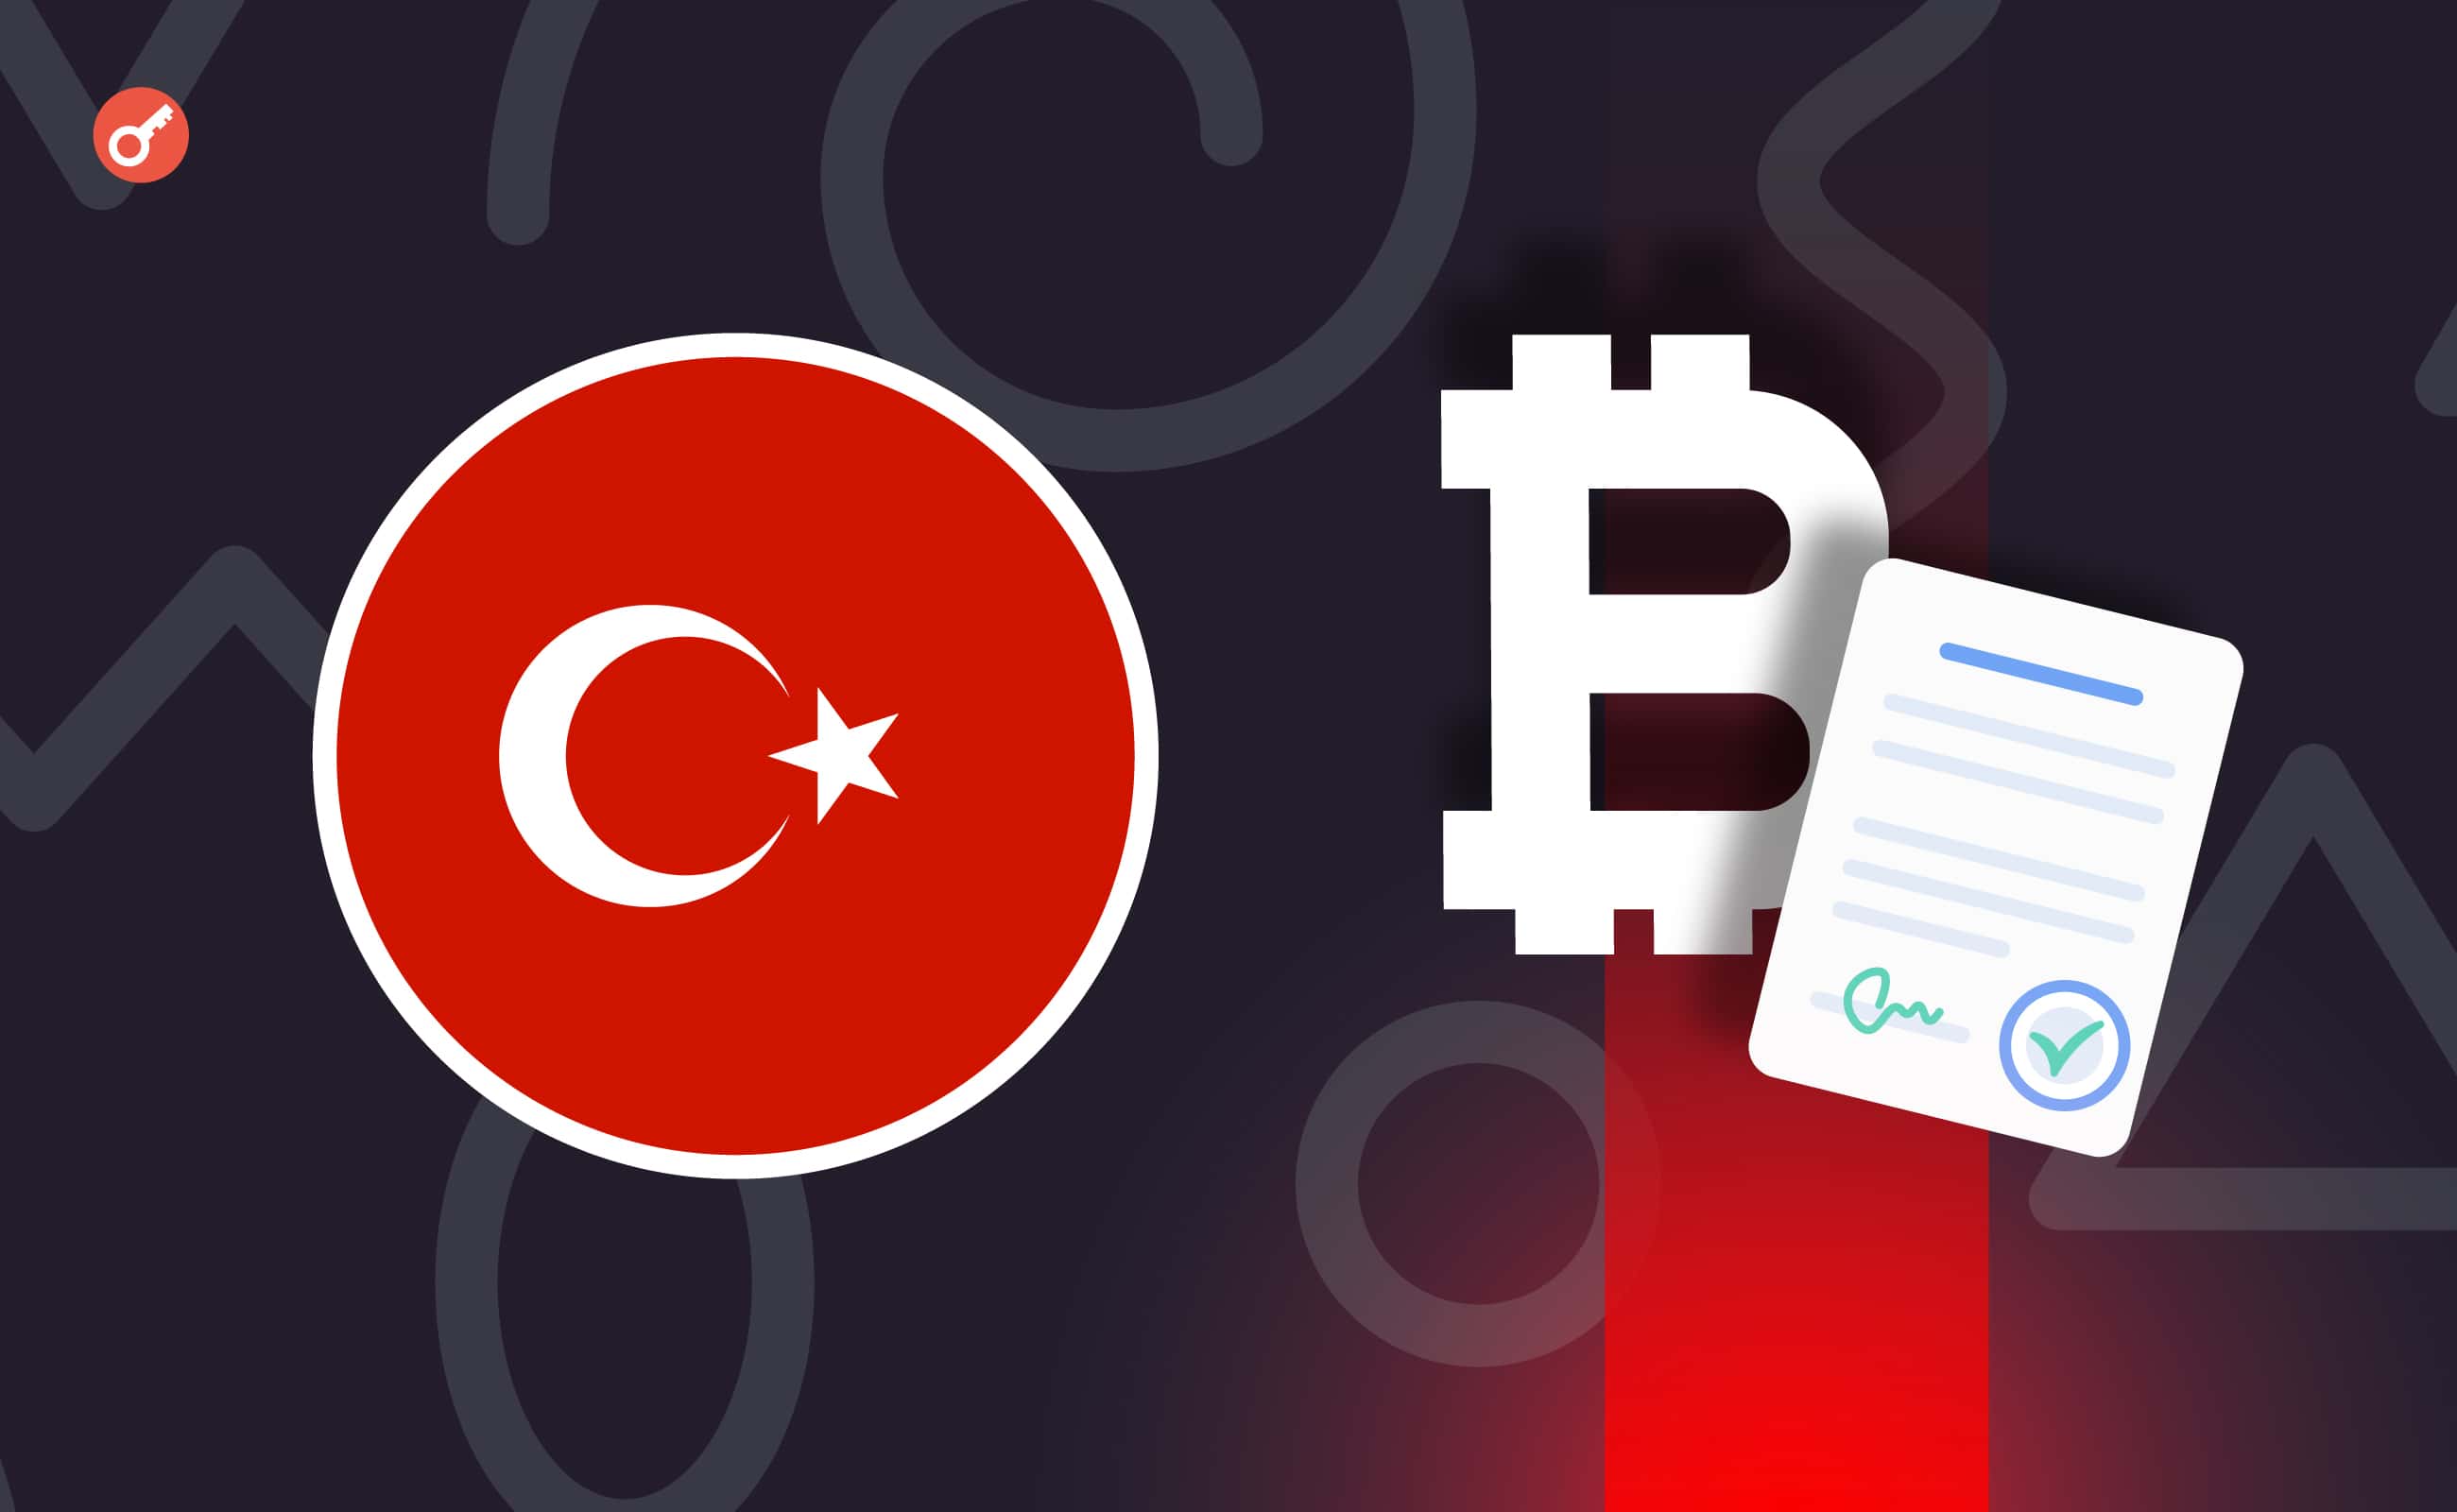 СМИ: власти Турции рассматривают возможность налогообложения криптовалют. Заглавный коллаж новости.